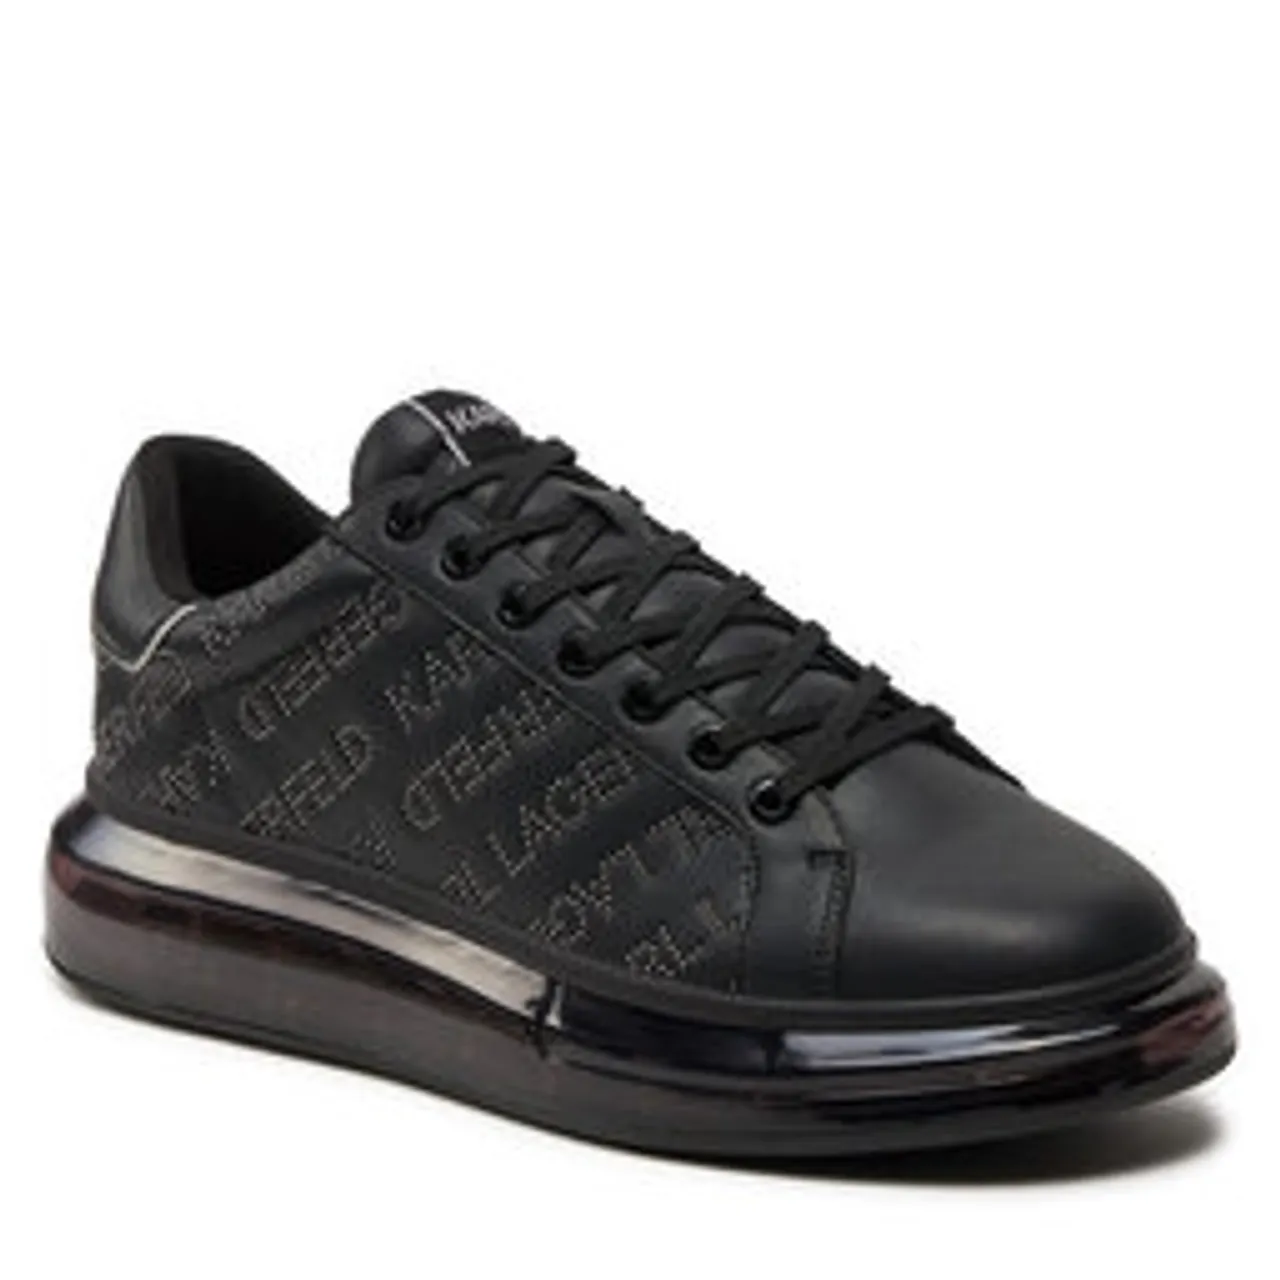 Sneakers KARL LAGERFELD KL52671 Black Lthr W/Dk Grey